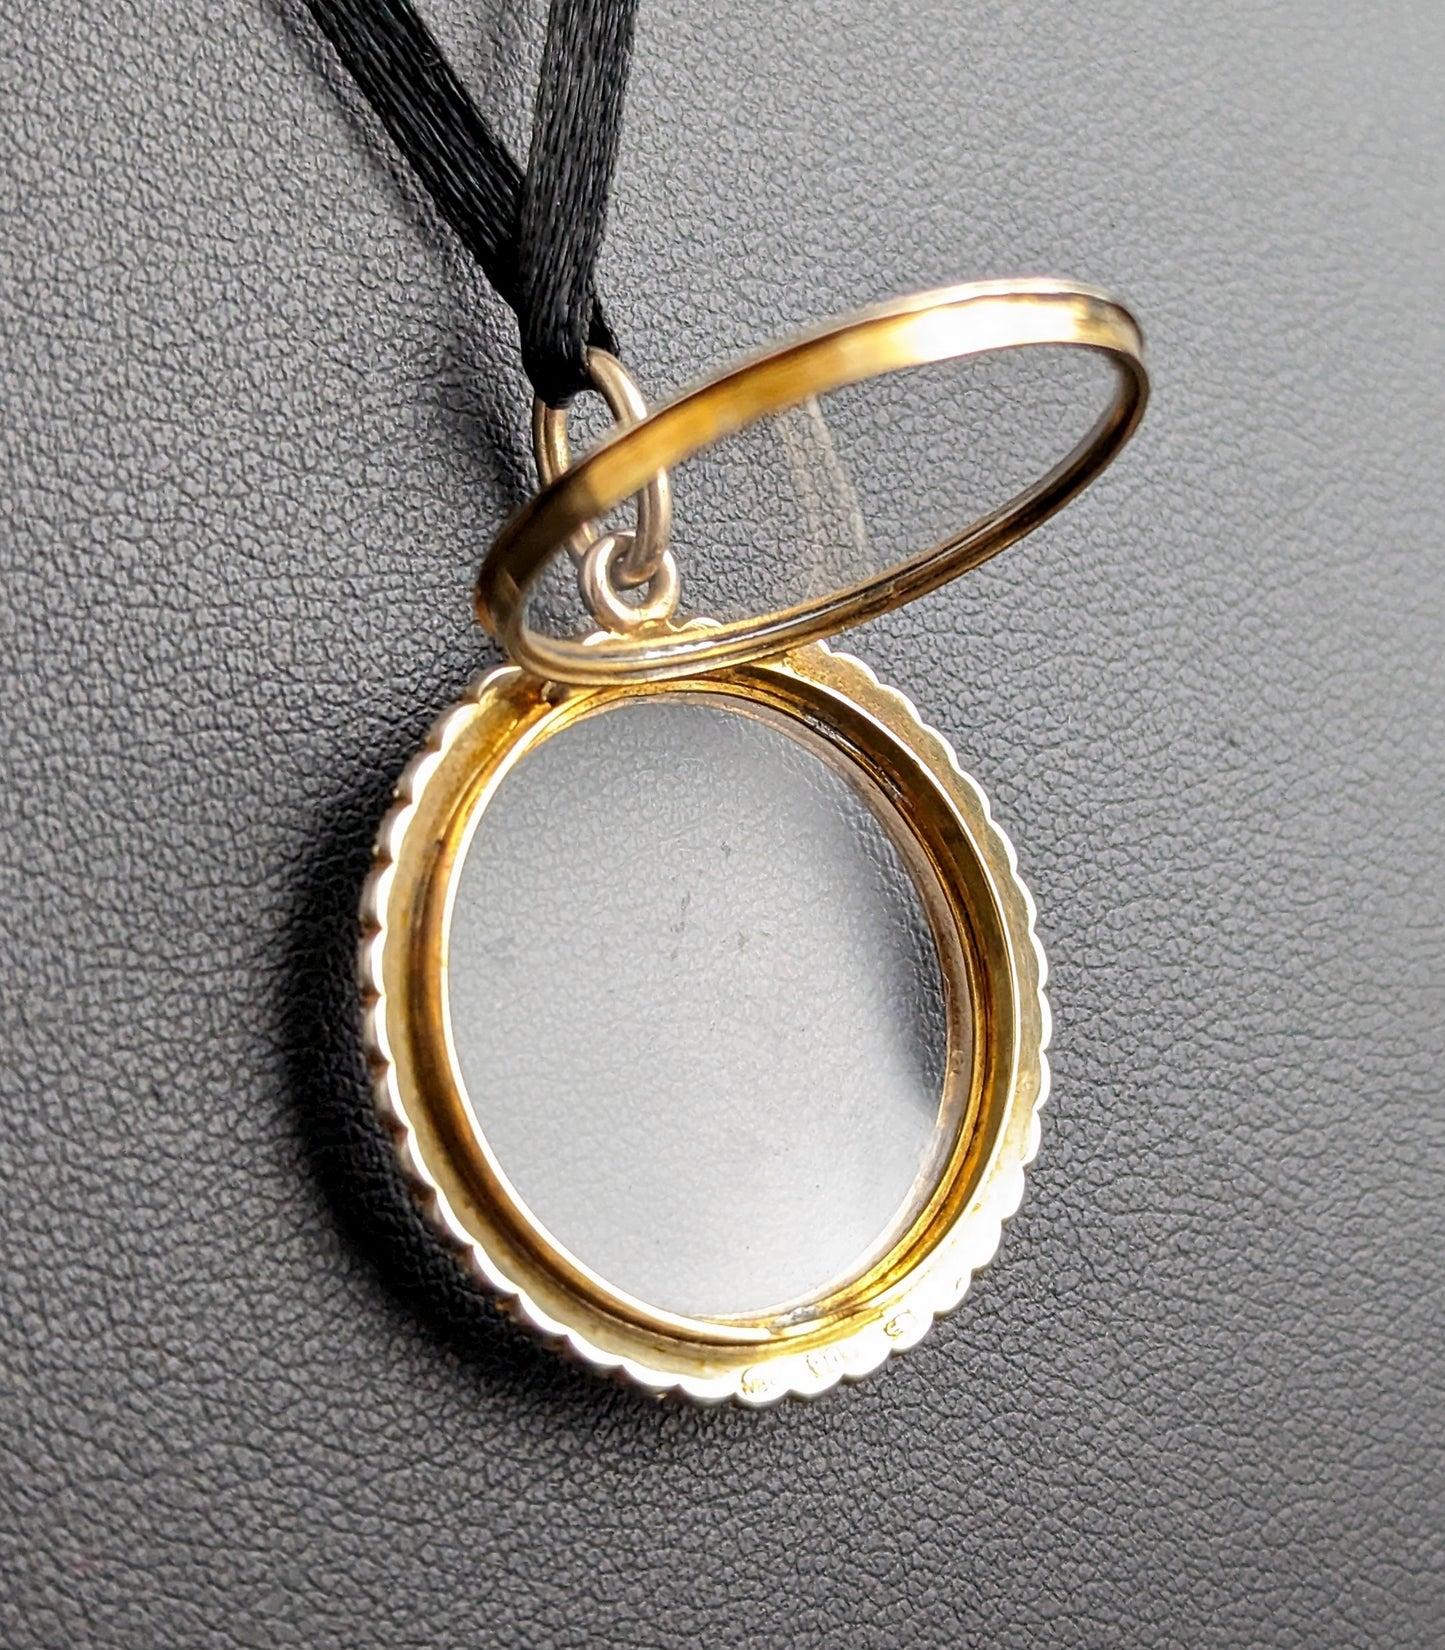 Antique pearl shaker locket, 9ct gold, Murrle Bennett